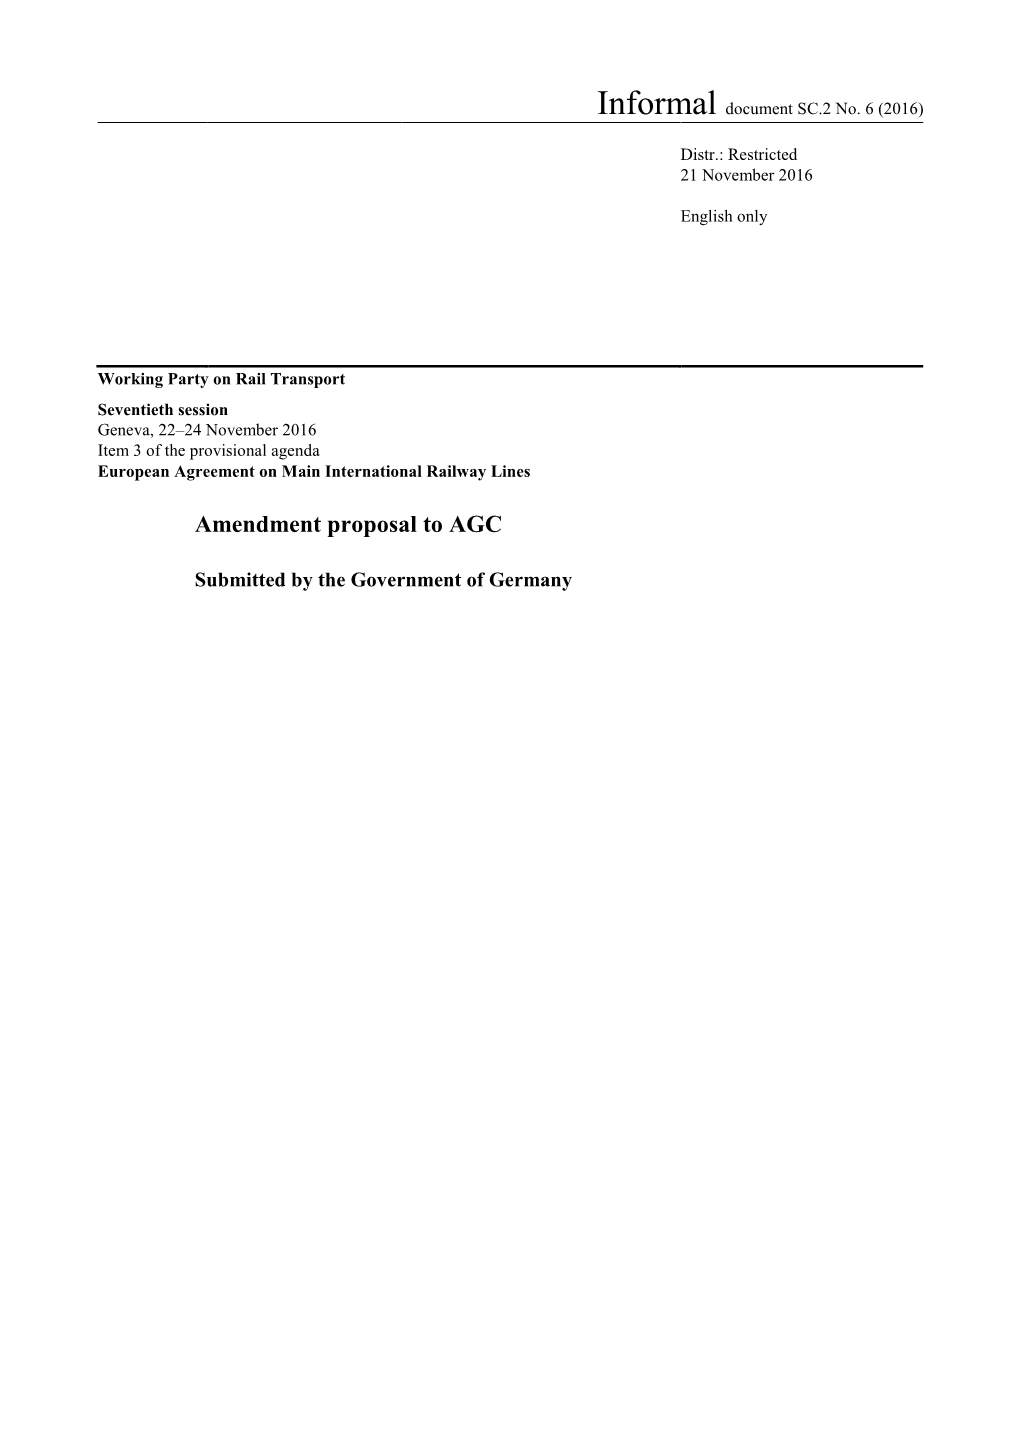 Amendment Proposal to AGC